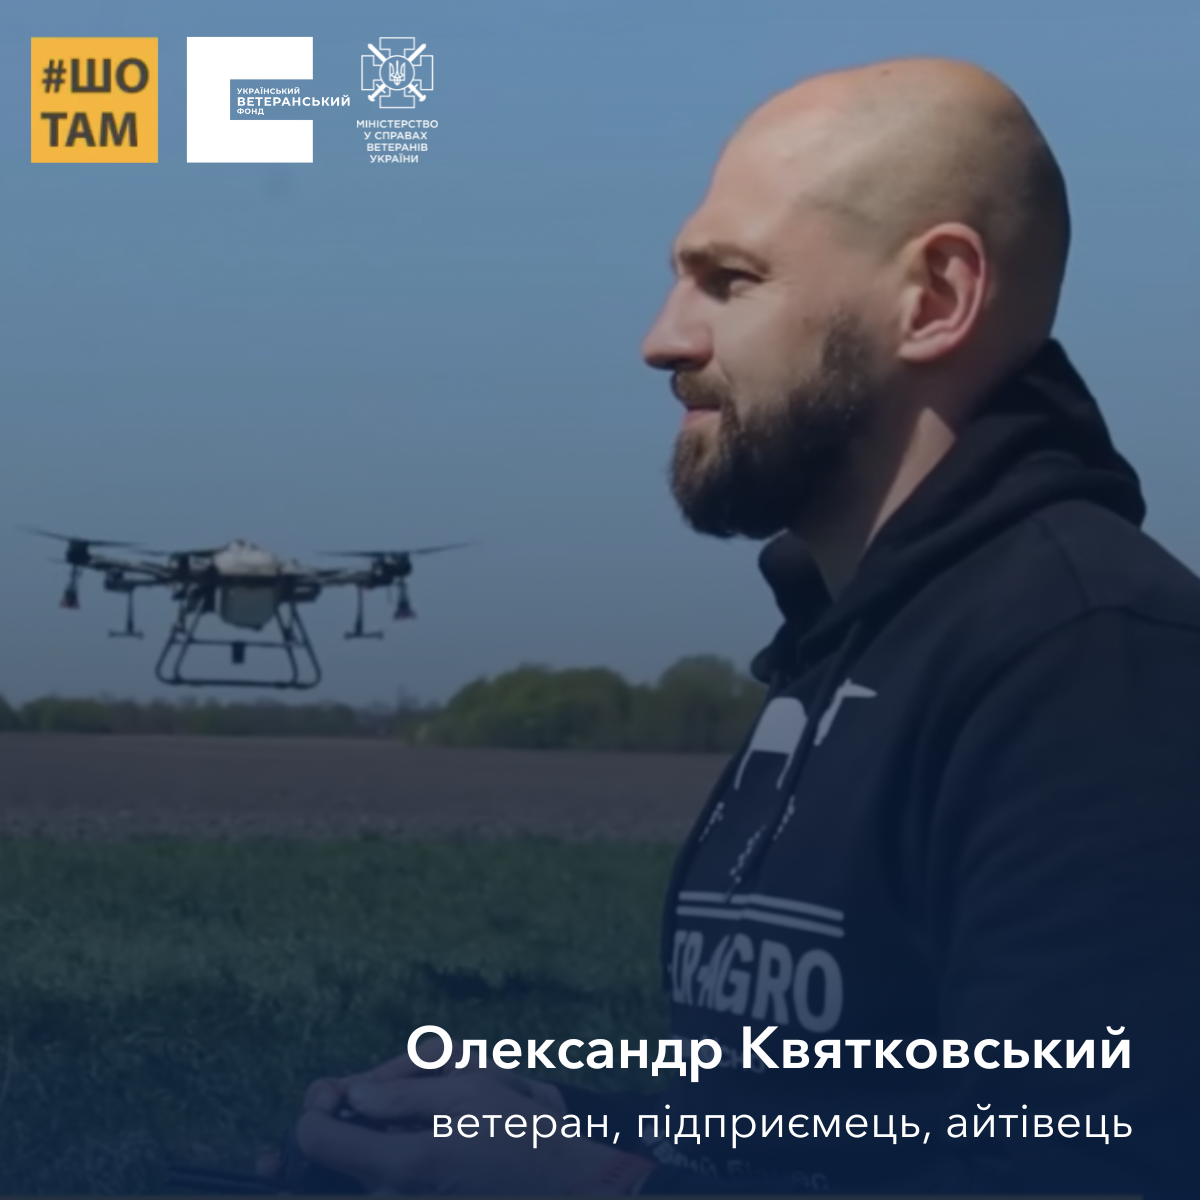 Олександр Квятковський: ветеран, що дронами допомагає фермерам. Нове відео ШоТам